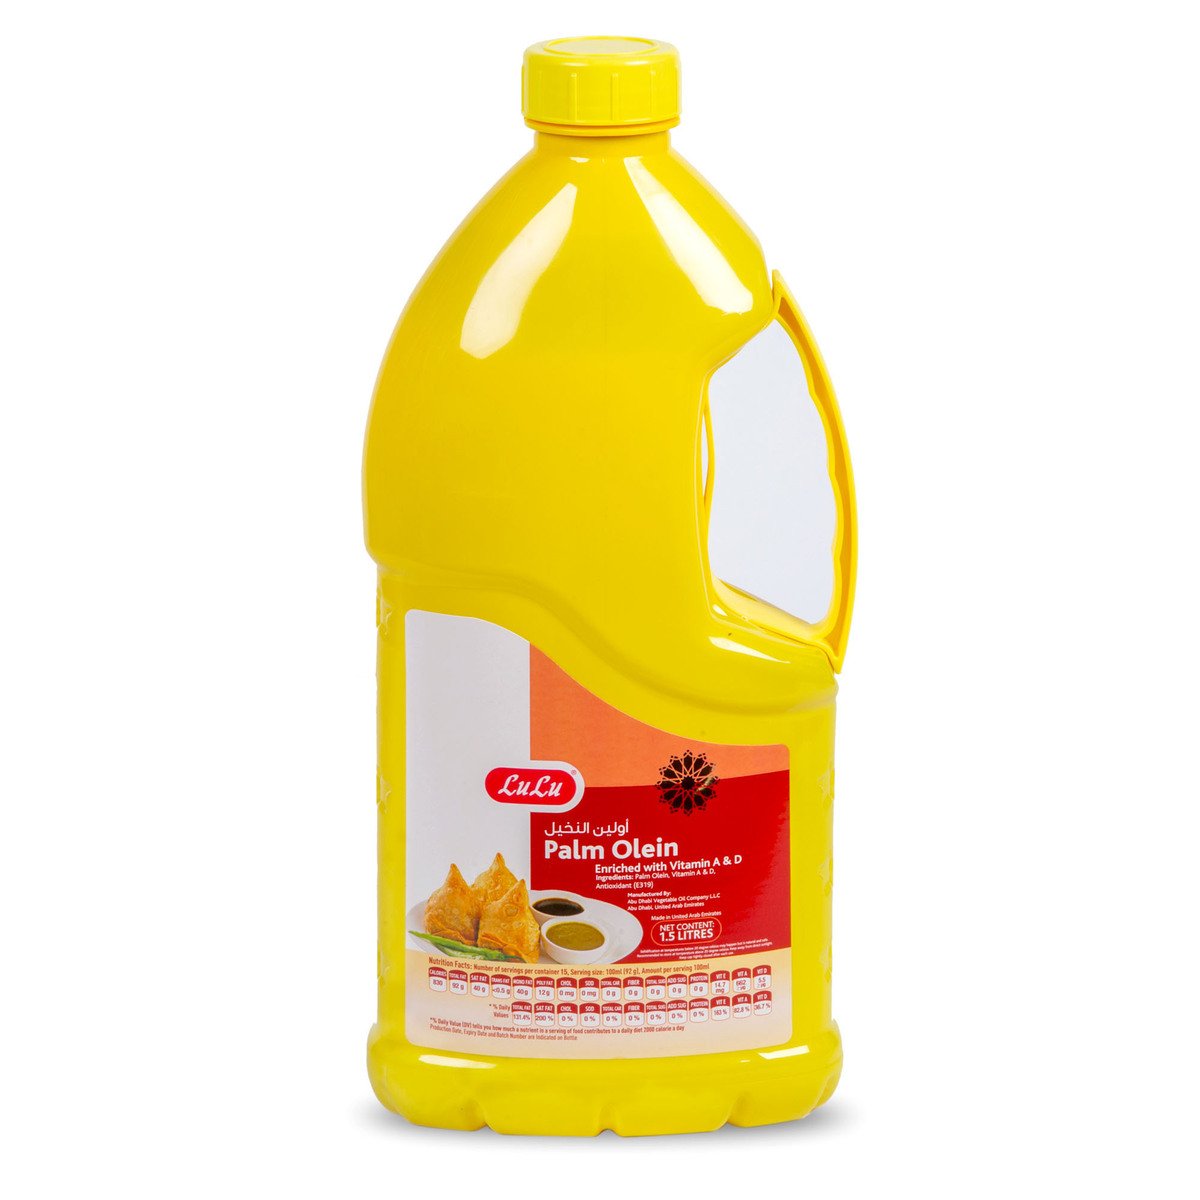 Buy LuLu Palm Olein 1.5 Litres Online at Best Price | Vegetable Oil | Lulu UAE in Kuwait